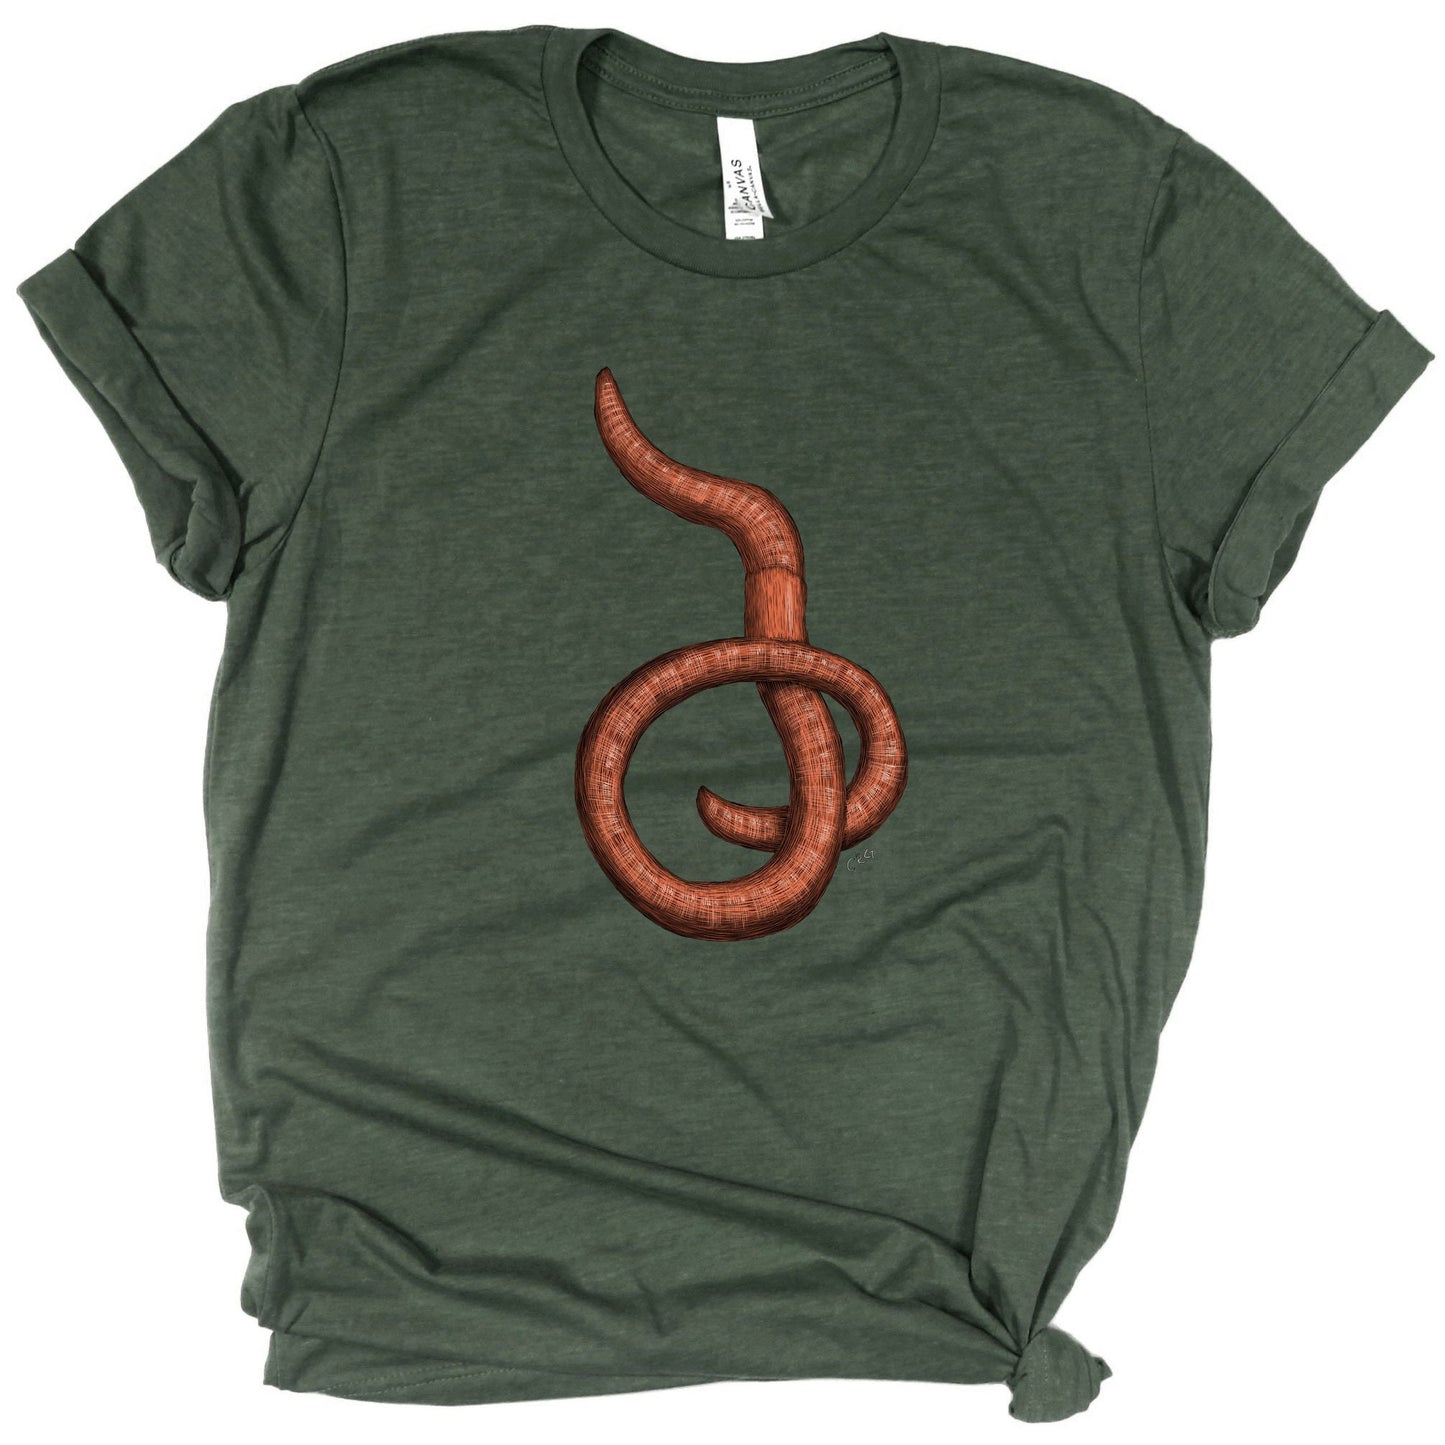 Earthworm Shirt